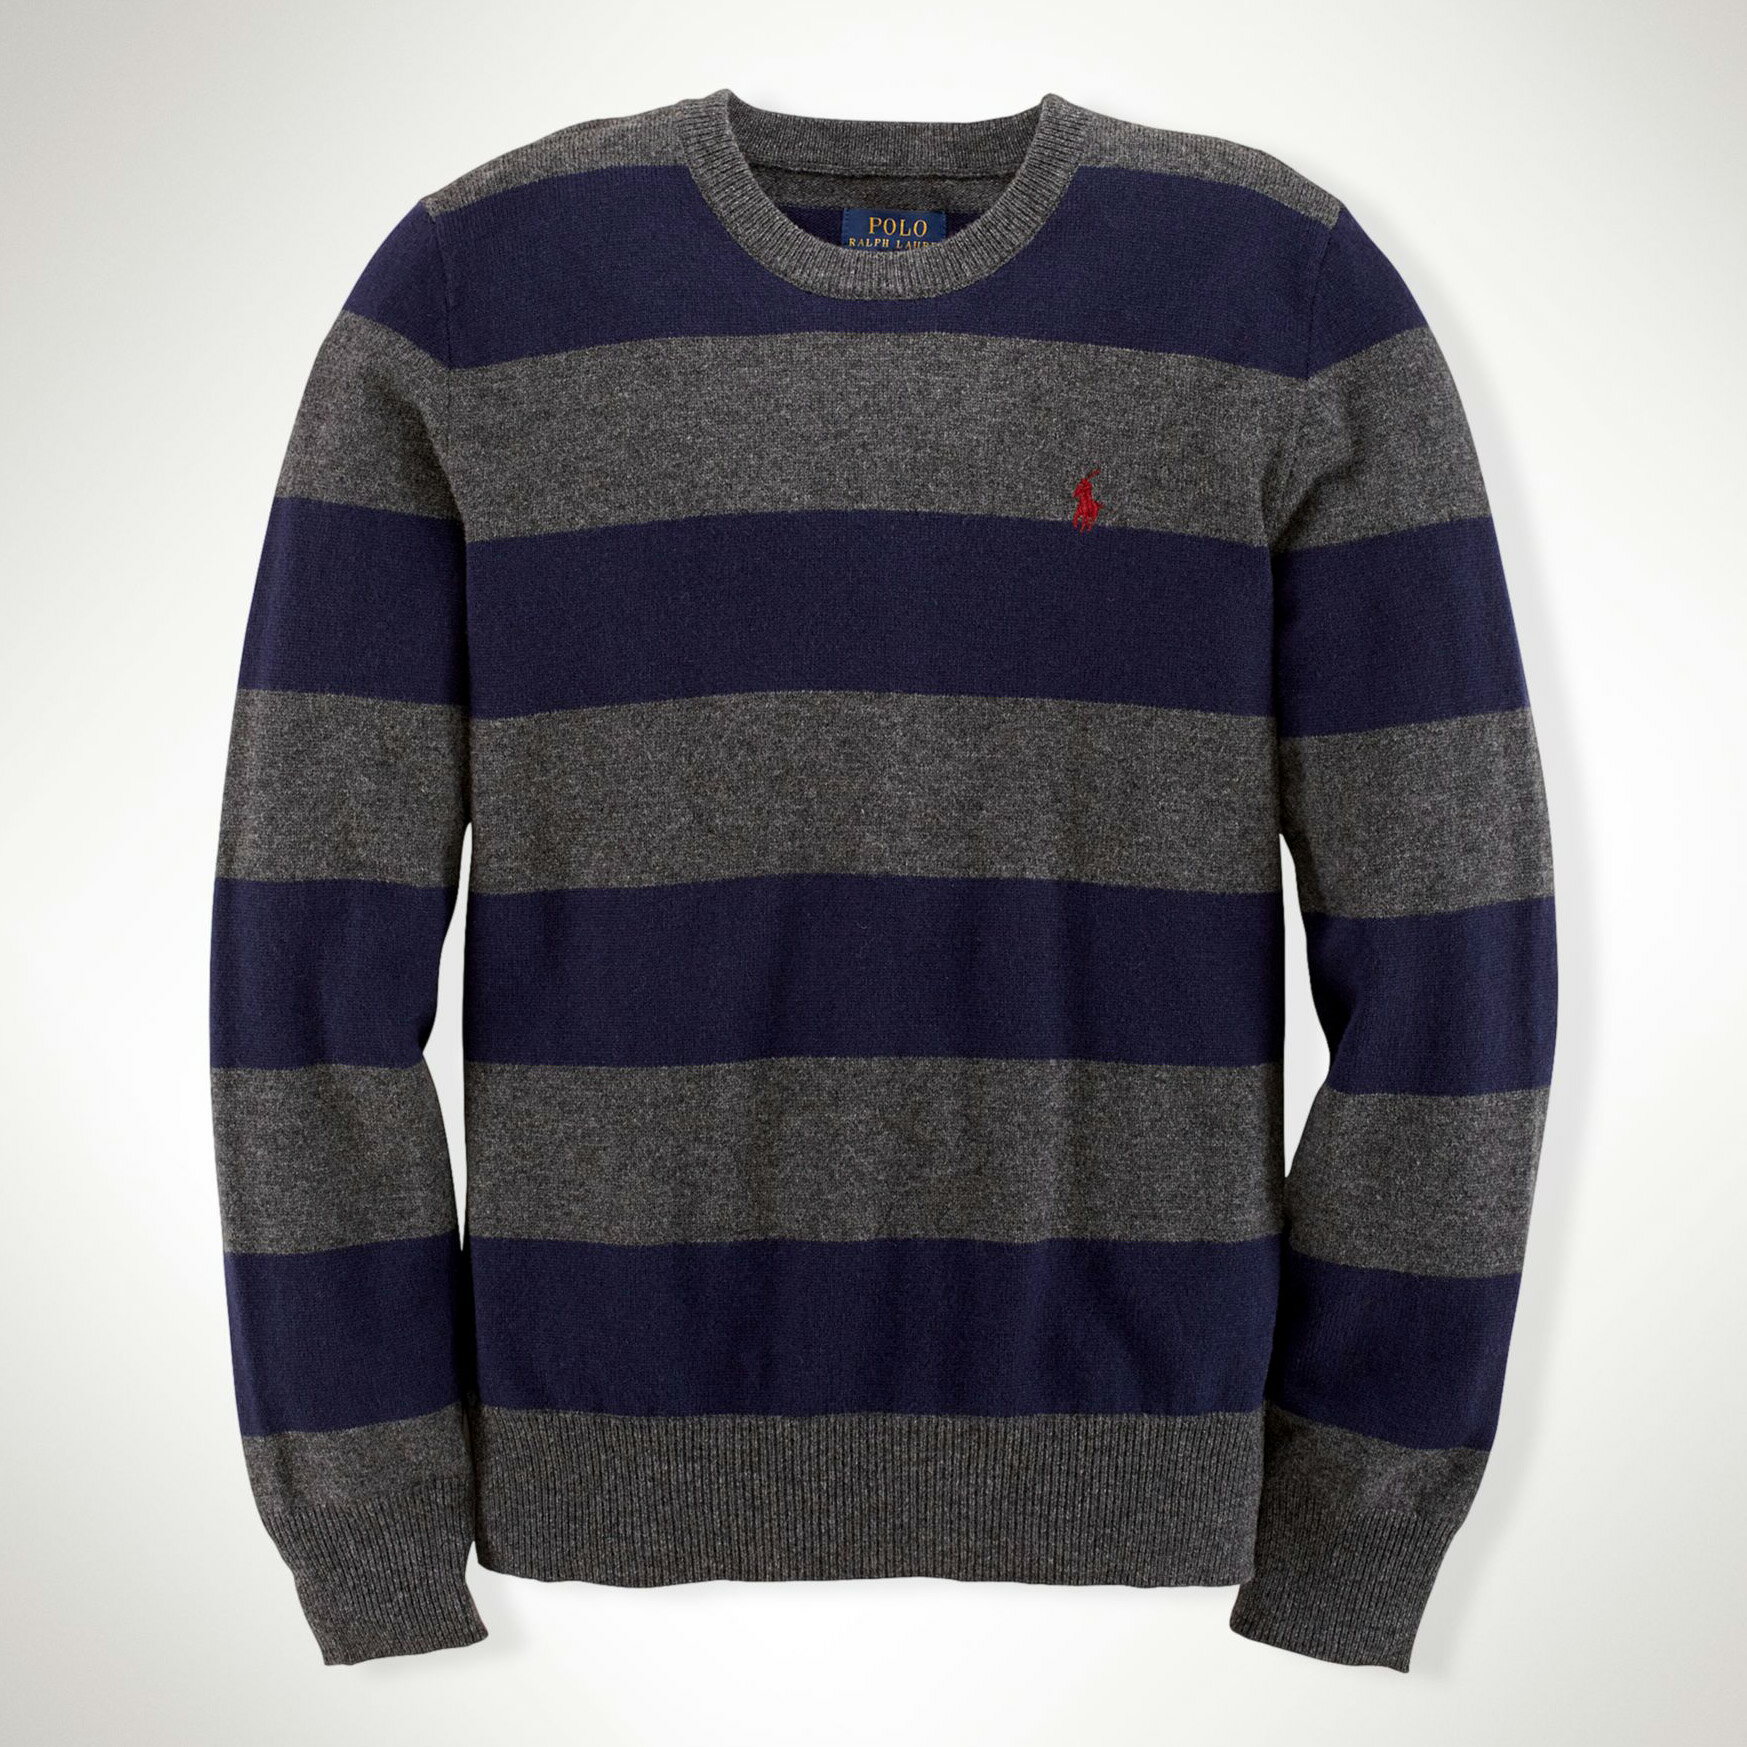 美國百分百【全新真品】Ralph Lauren 針織衫 RL polo 小馬 條紋 線衫 深藍 灰 XS S C462